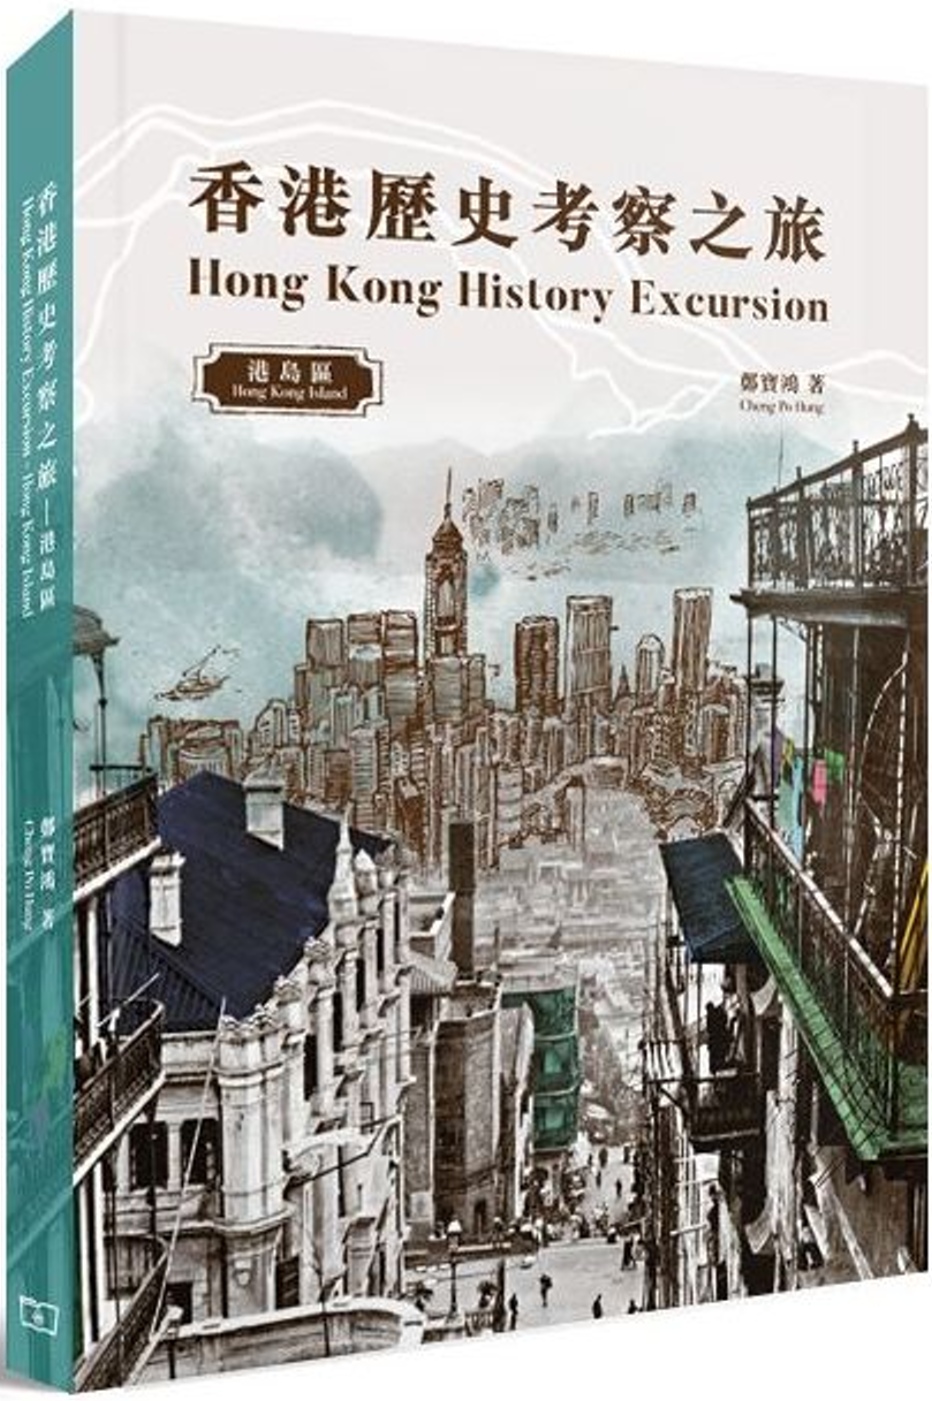 香港歷史考察之旅...